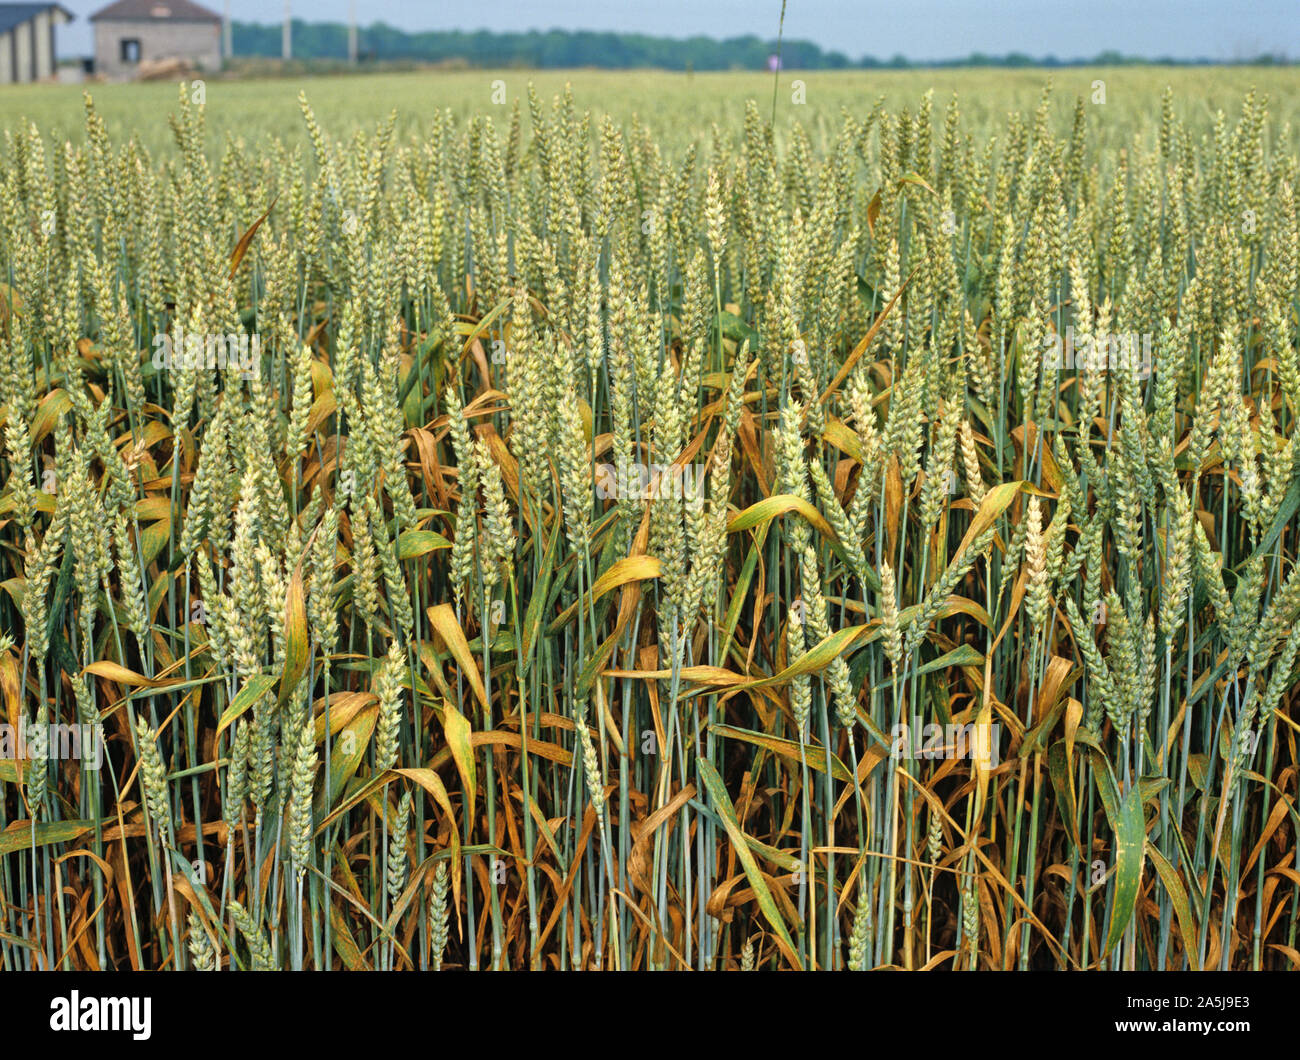 Brauner Rost oder Weizenleatrost (Puccinia triticina) eine schwere Infektion dieser Pilzkrankheit in einer französischen Weizenernte Stockfoto